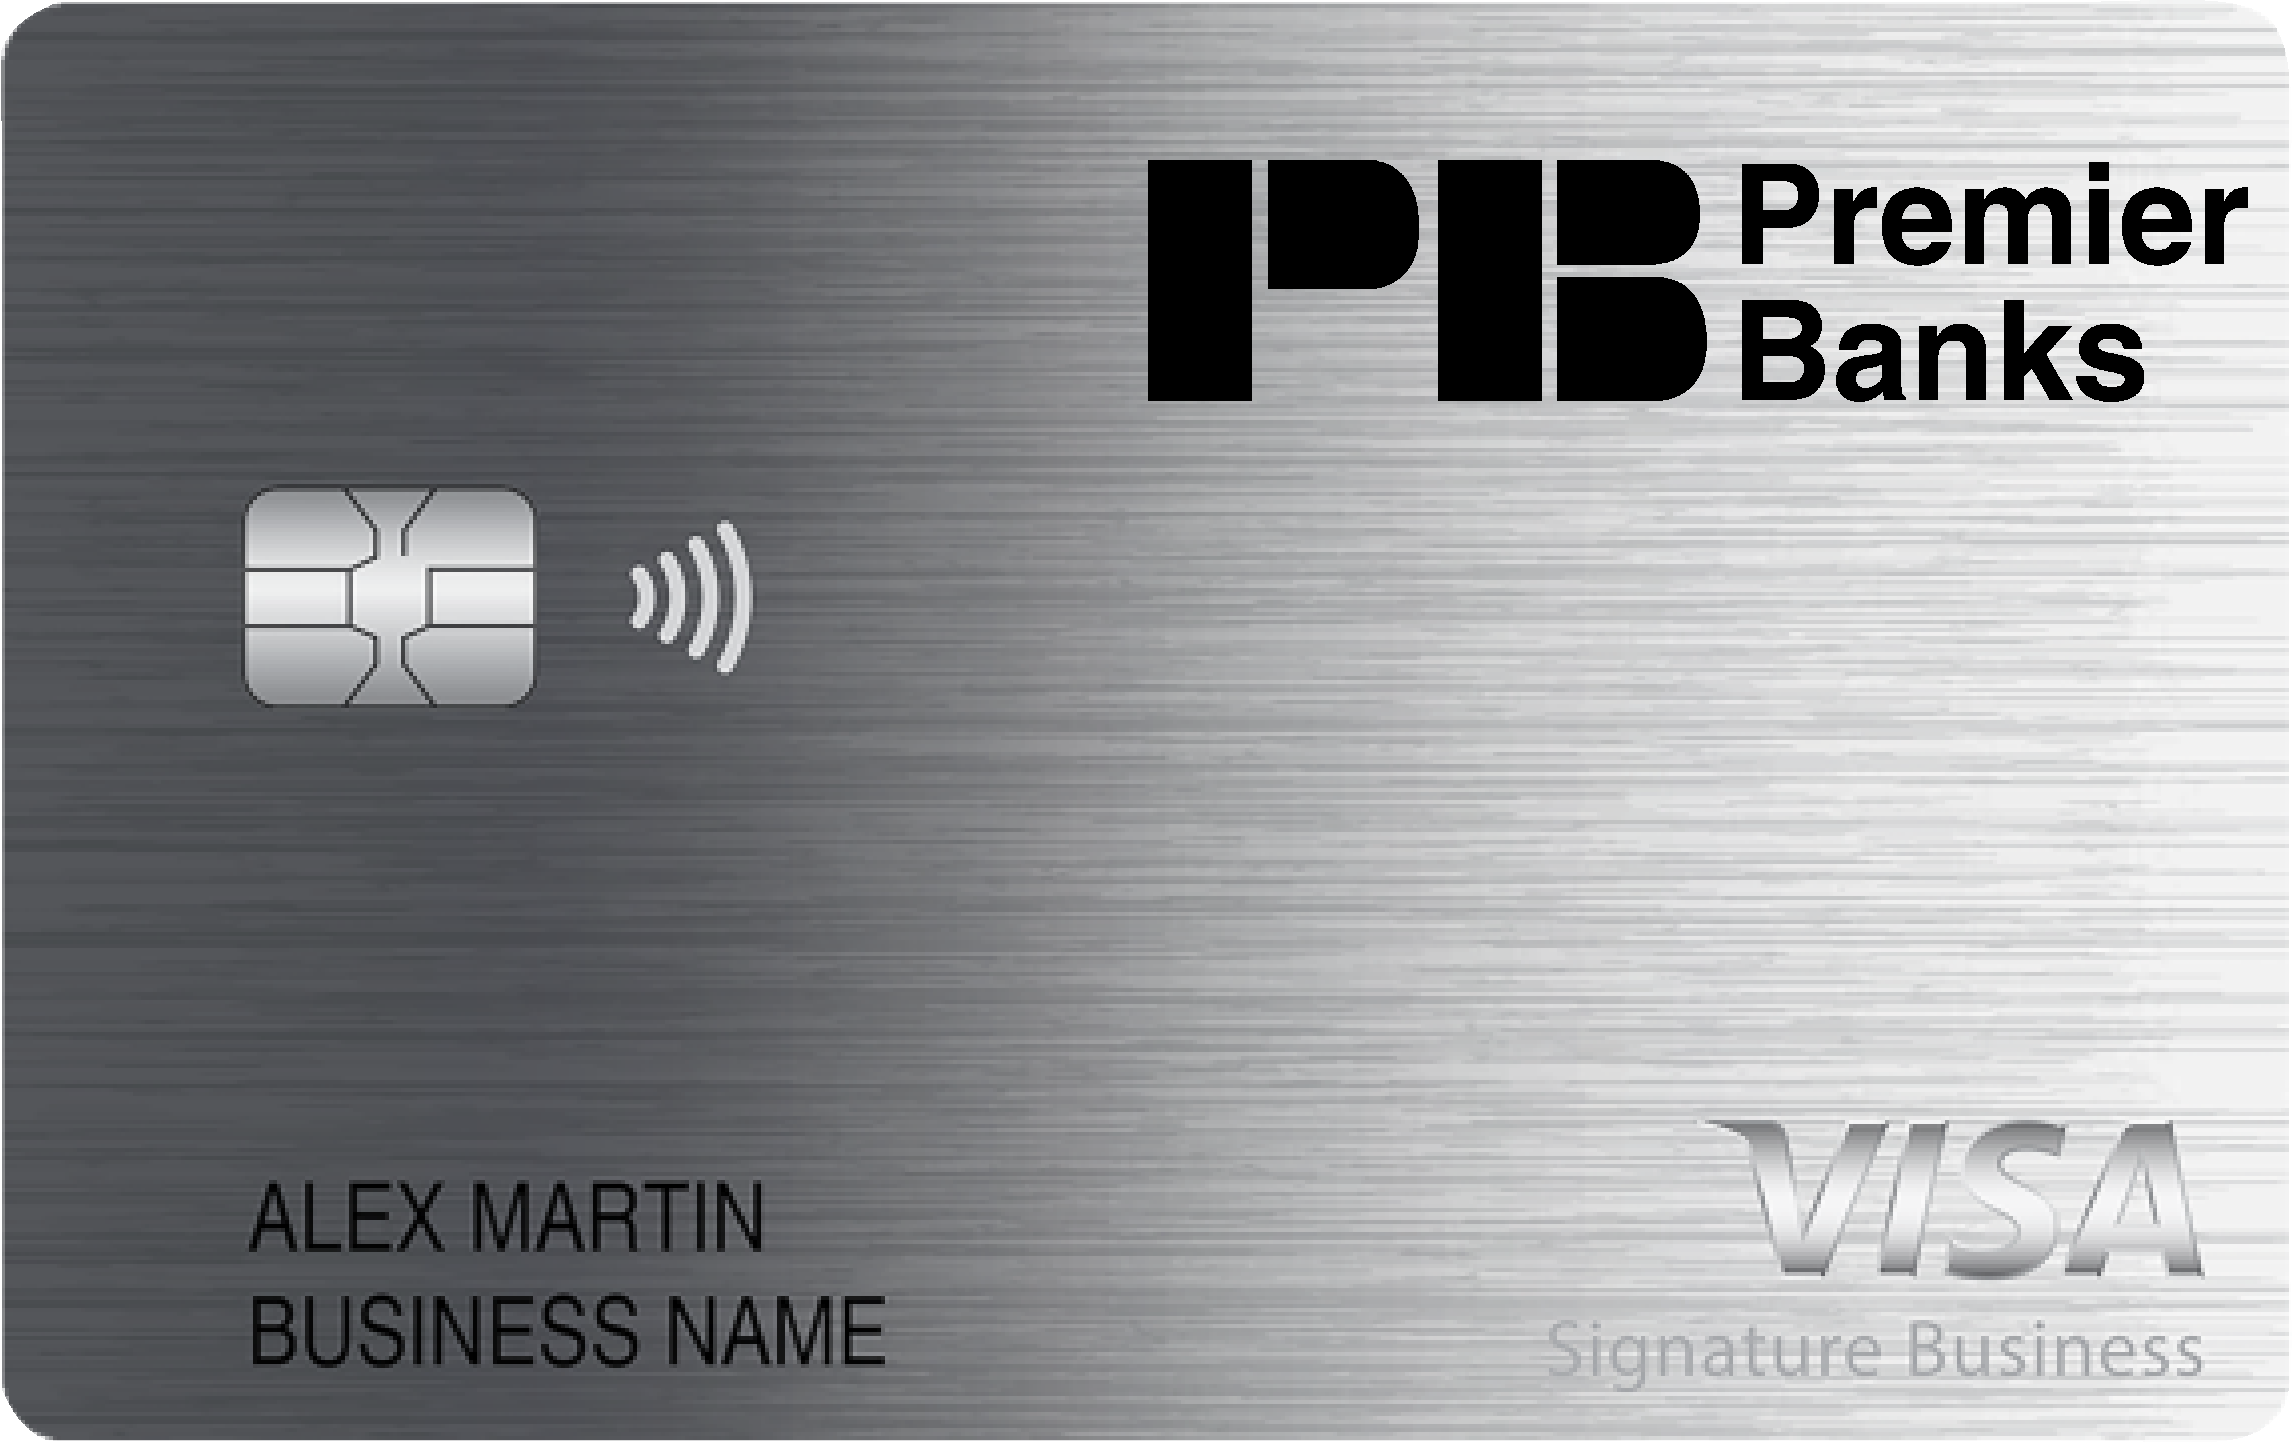 Premier Bank Smart Business Rewards Card